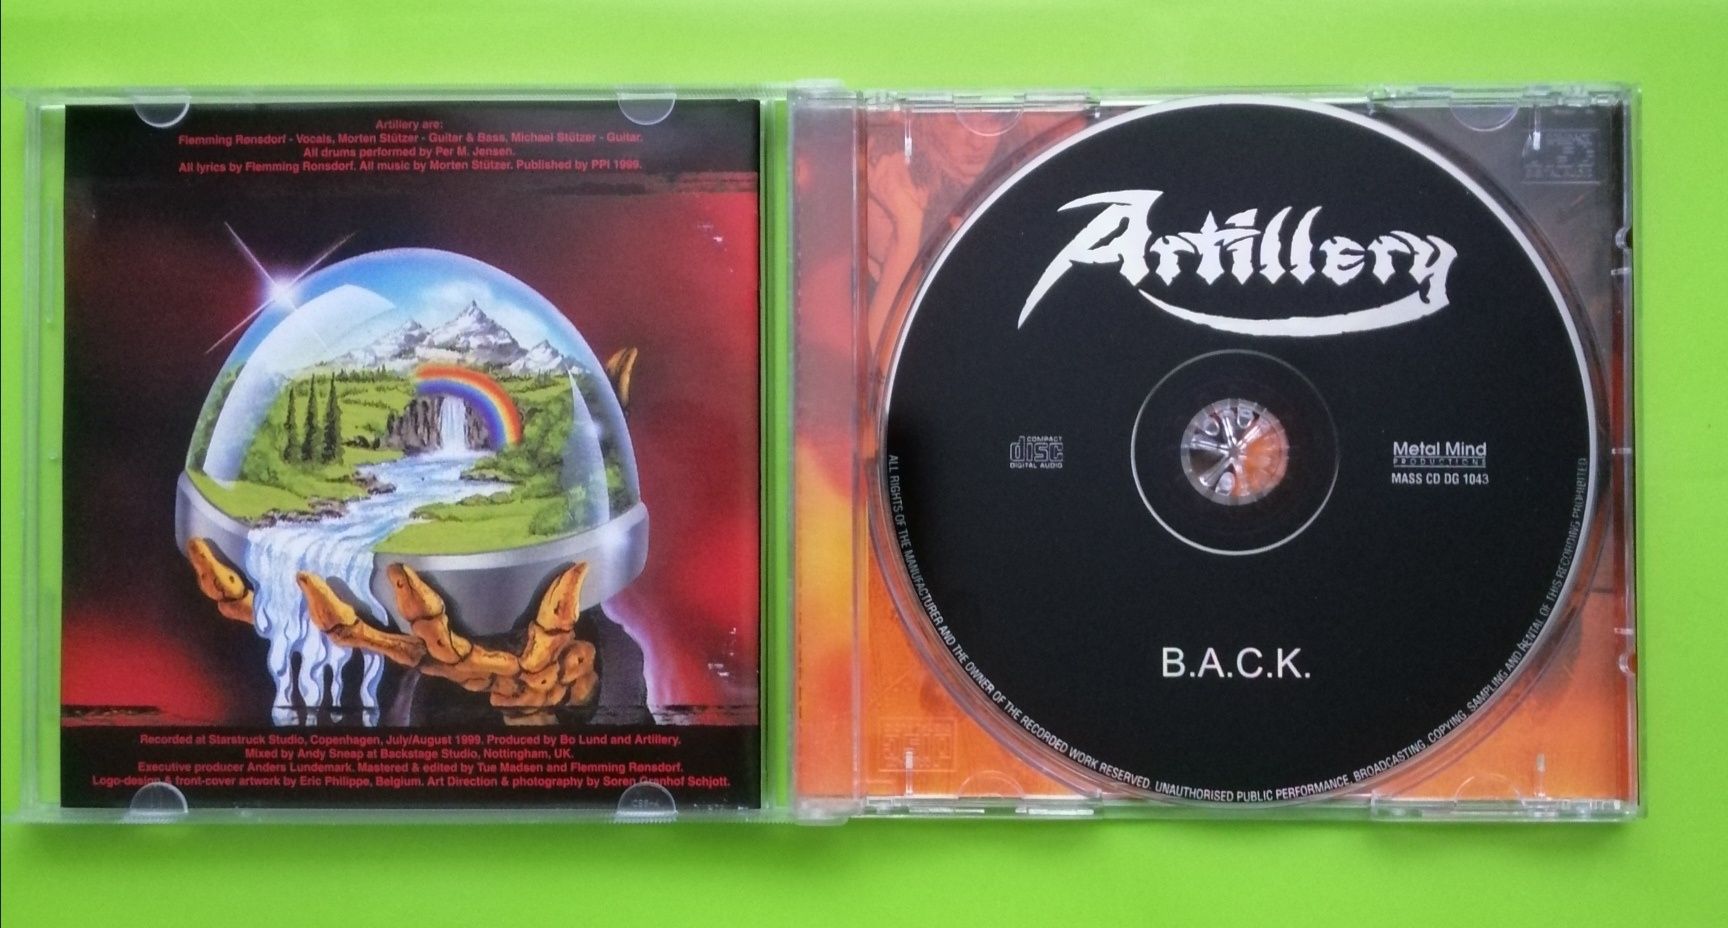 Диск Artillery B.A.C.K - 1999, CD